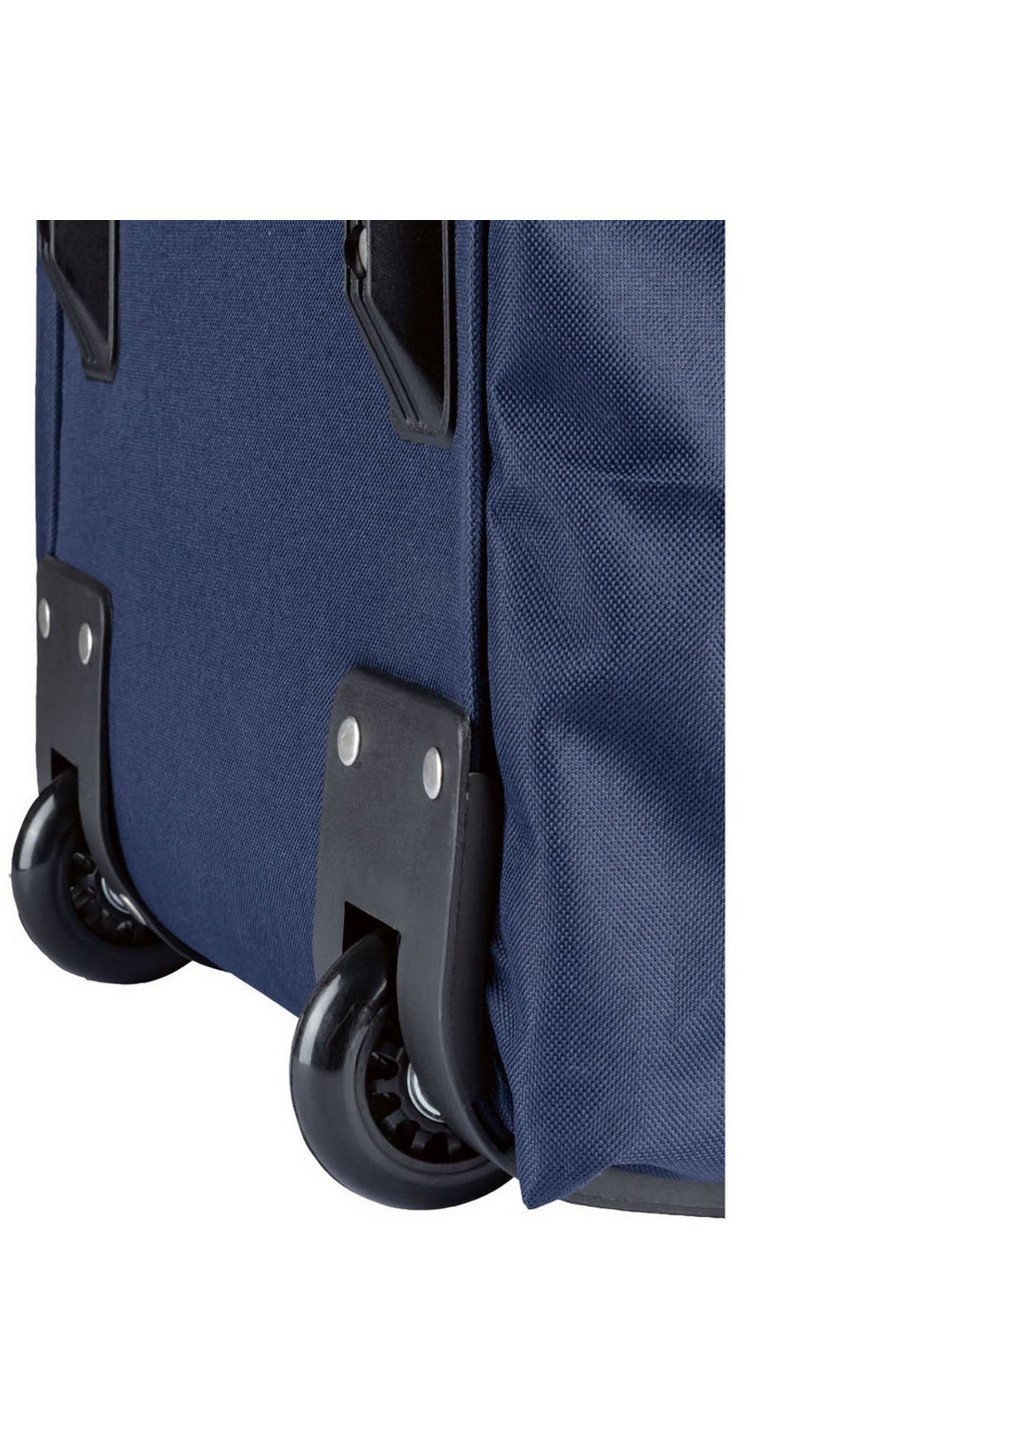 Вместительная дорожная сумка на колесах 31x73x30 см Top Move (259206182)